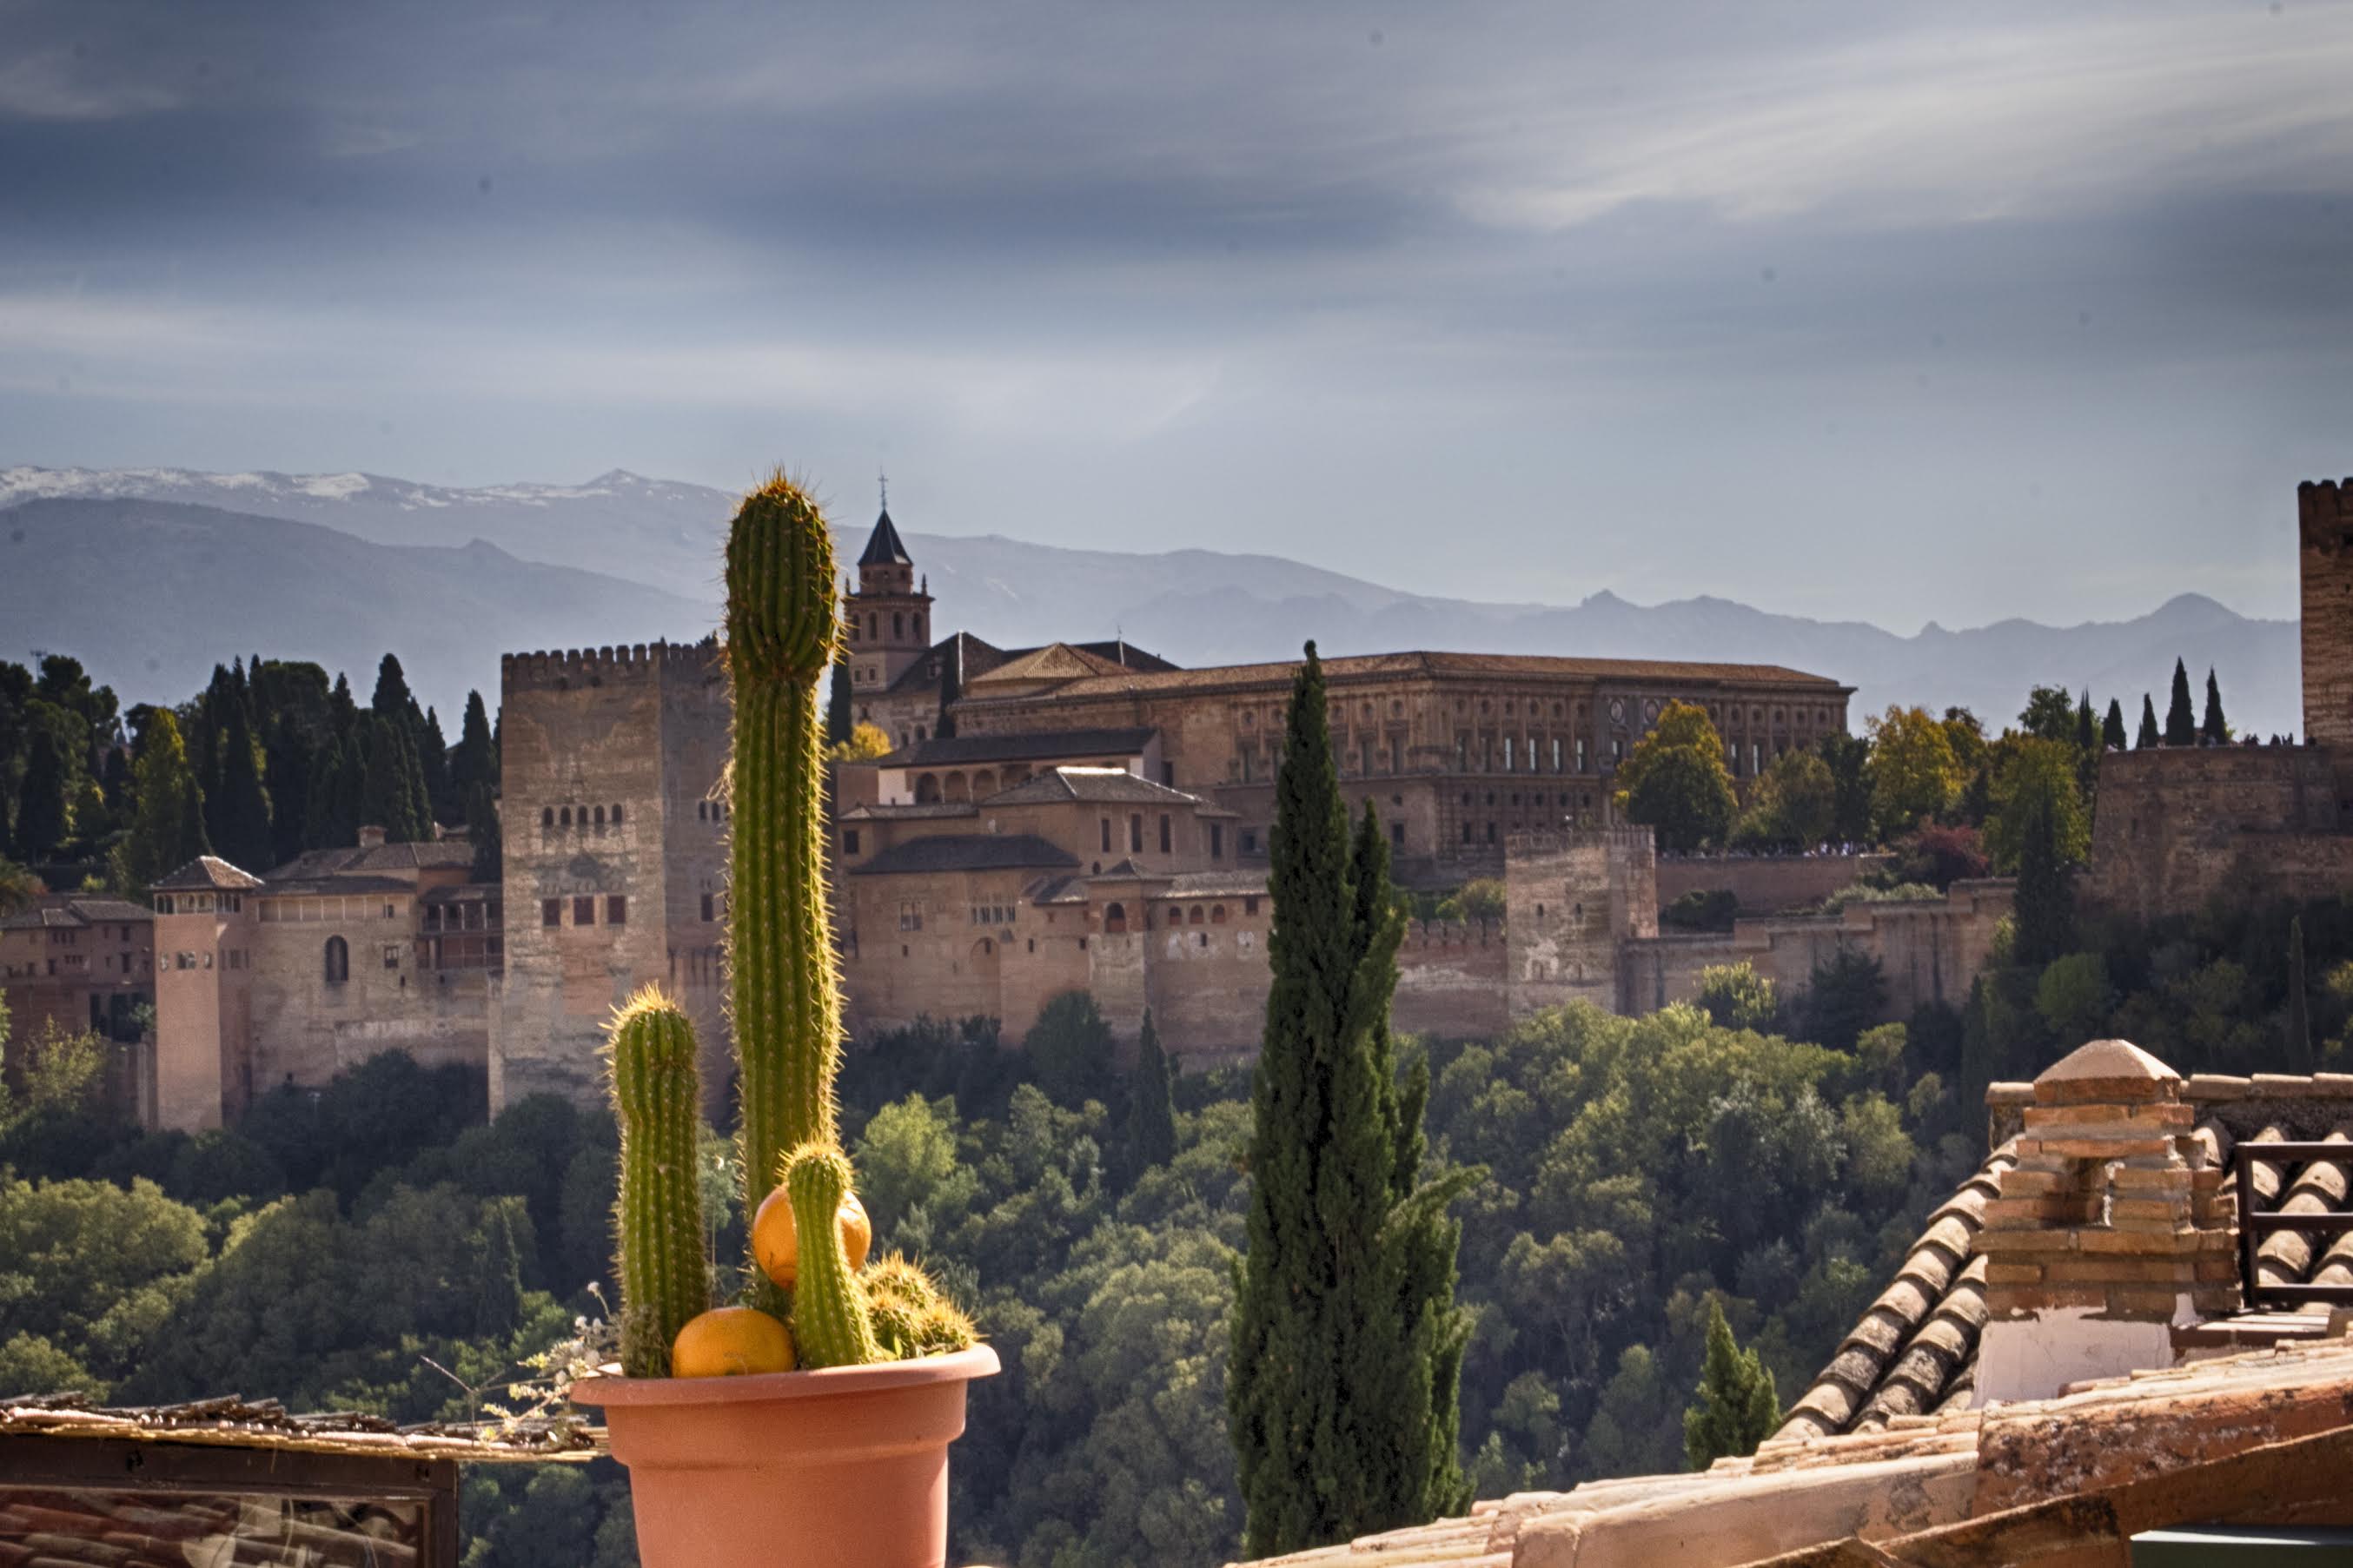 Cactus mirando a La Alhambra